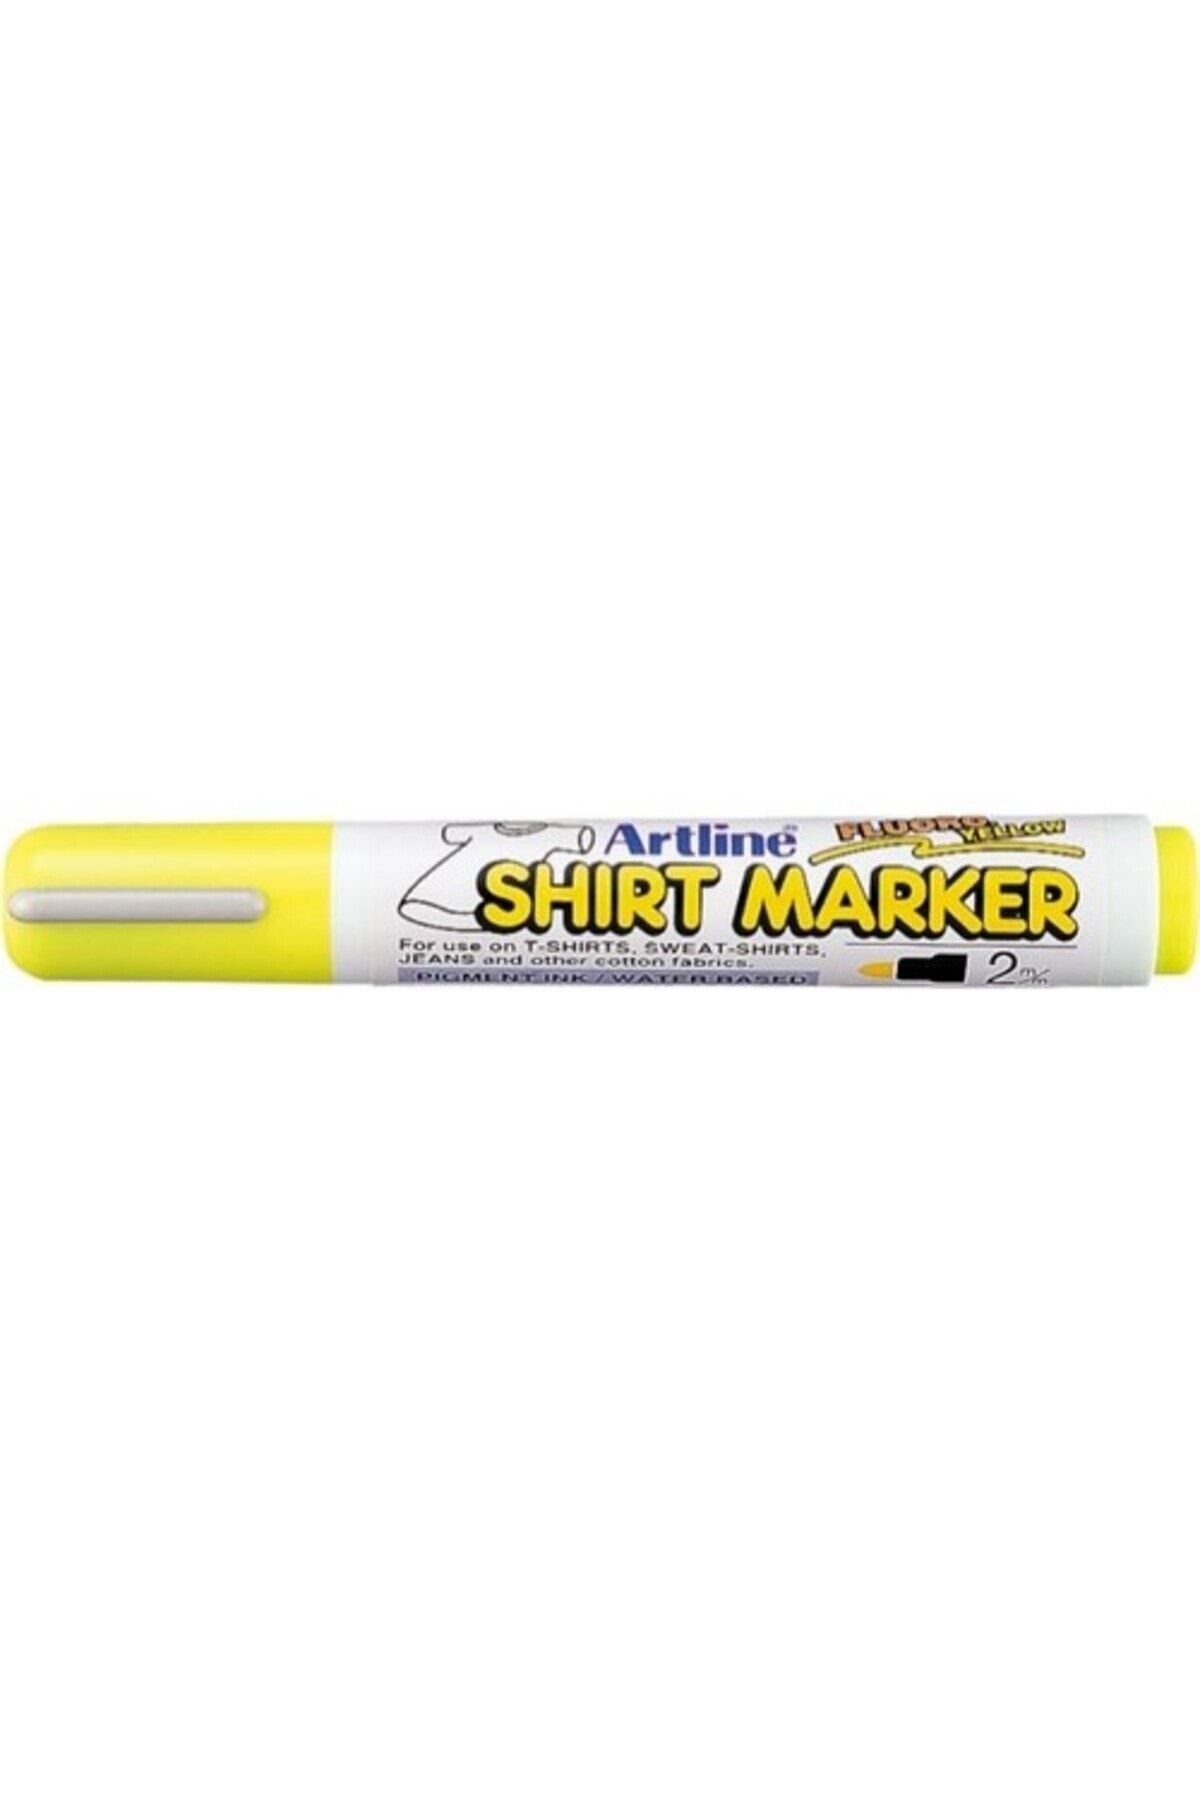 artline T-Shirt Kalemi (Kumaş Boya Kalemi) 2,0 Mm Fosforlu Sarı Ekt-2 (4 Lü Paket)